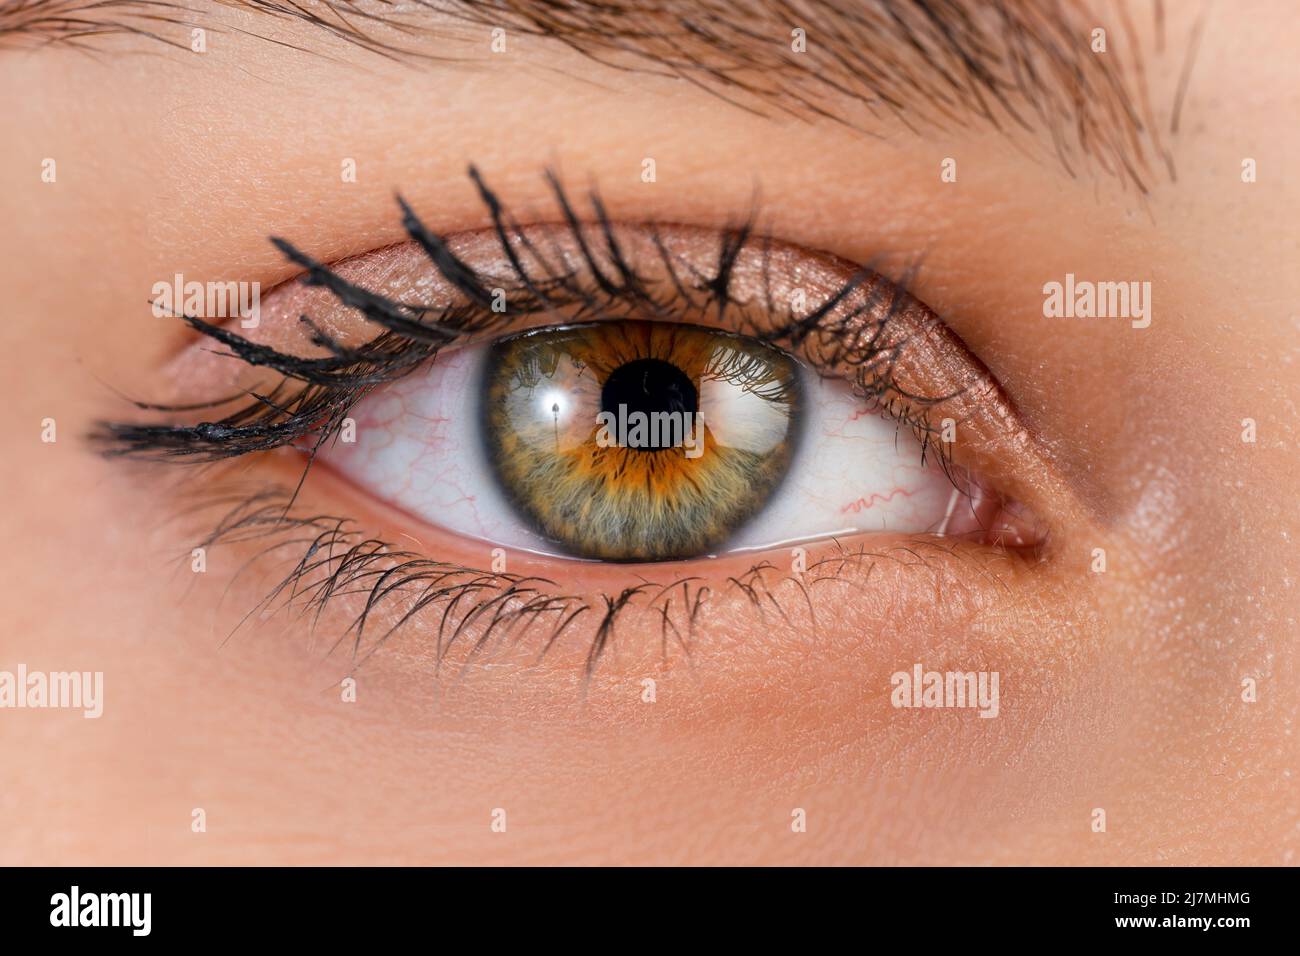 Close up, macro photo of o female color eye, iris, pupil, eye lashes, eye lids. High quality photo Stock Photo